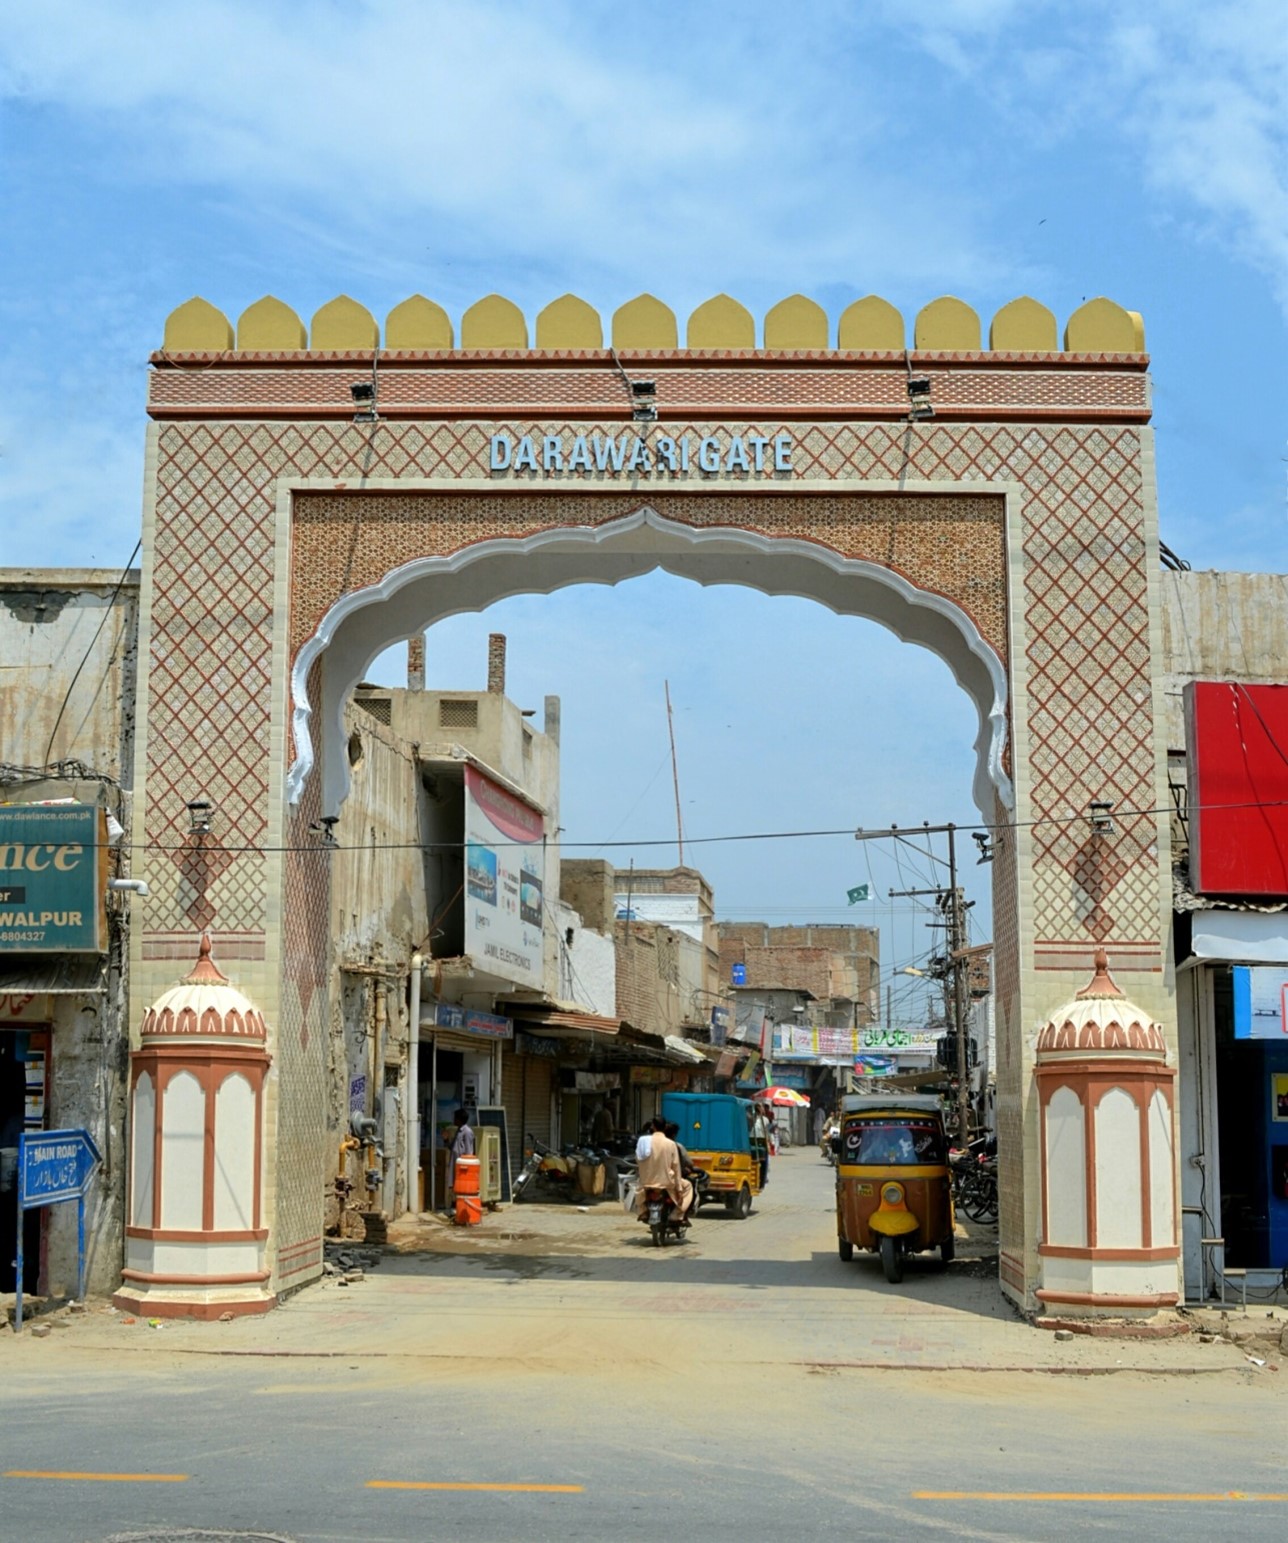 Derawari Gate